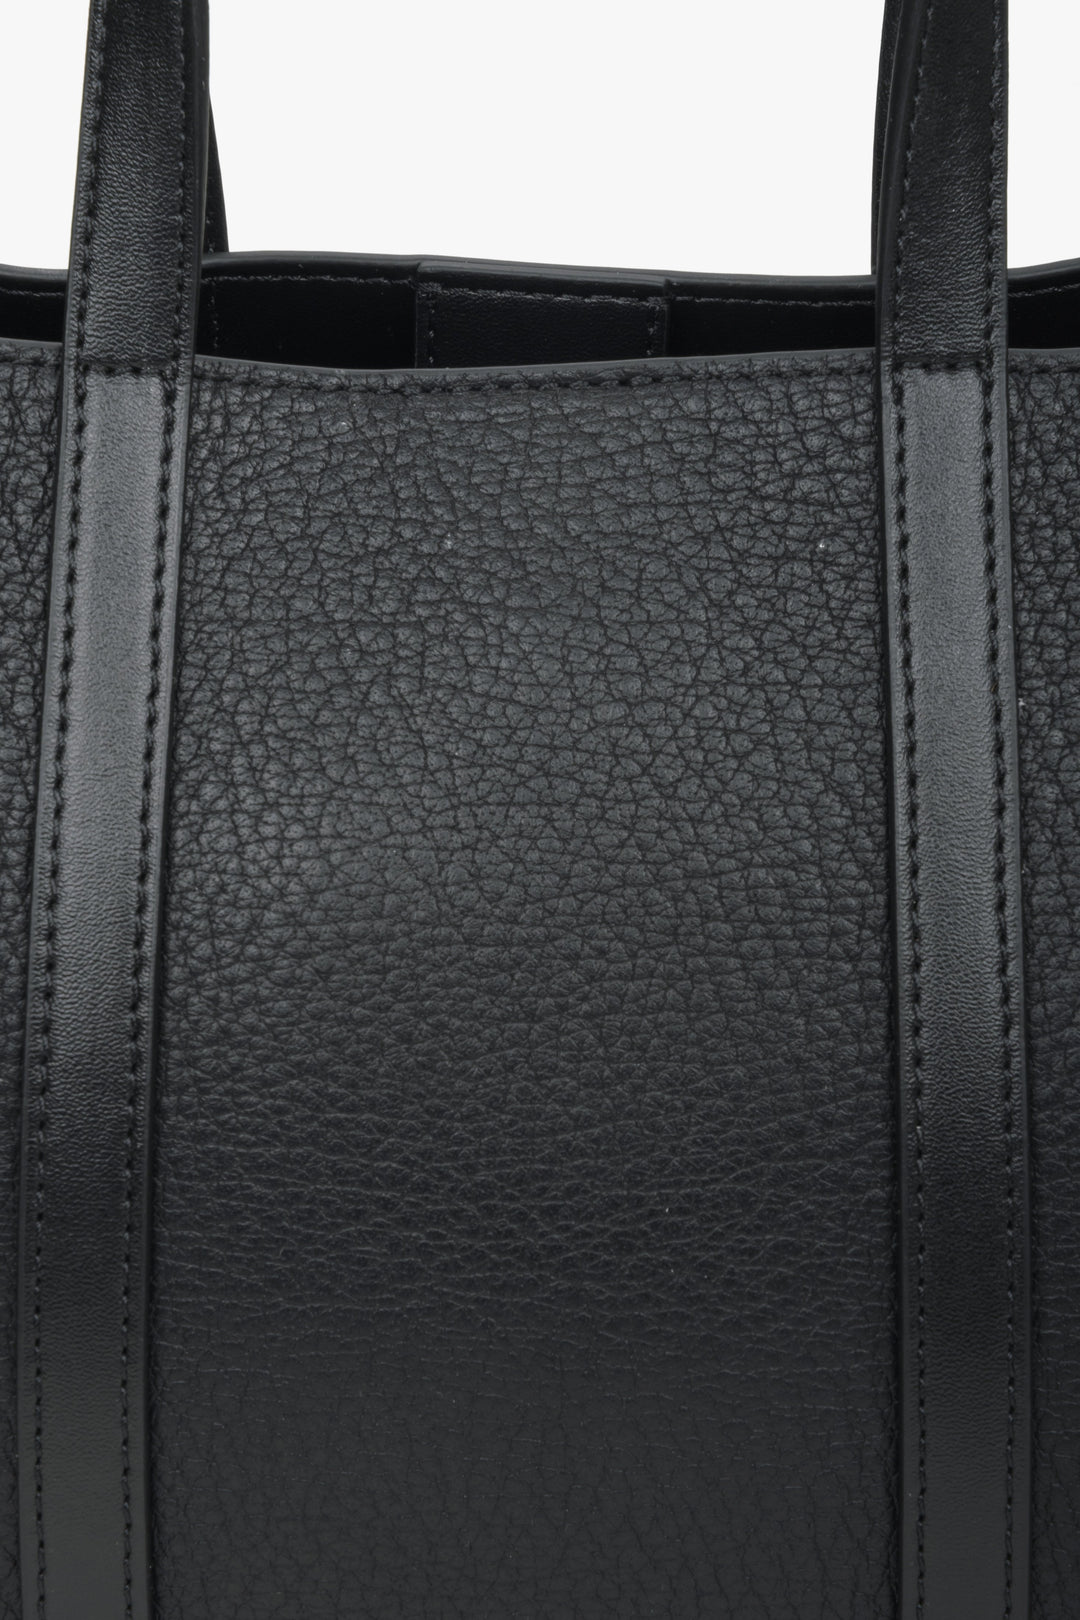 Skórzana czarna torba damska typu shopper Estro - zbliżenie na detale.